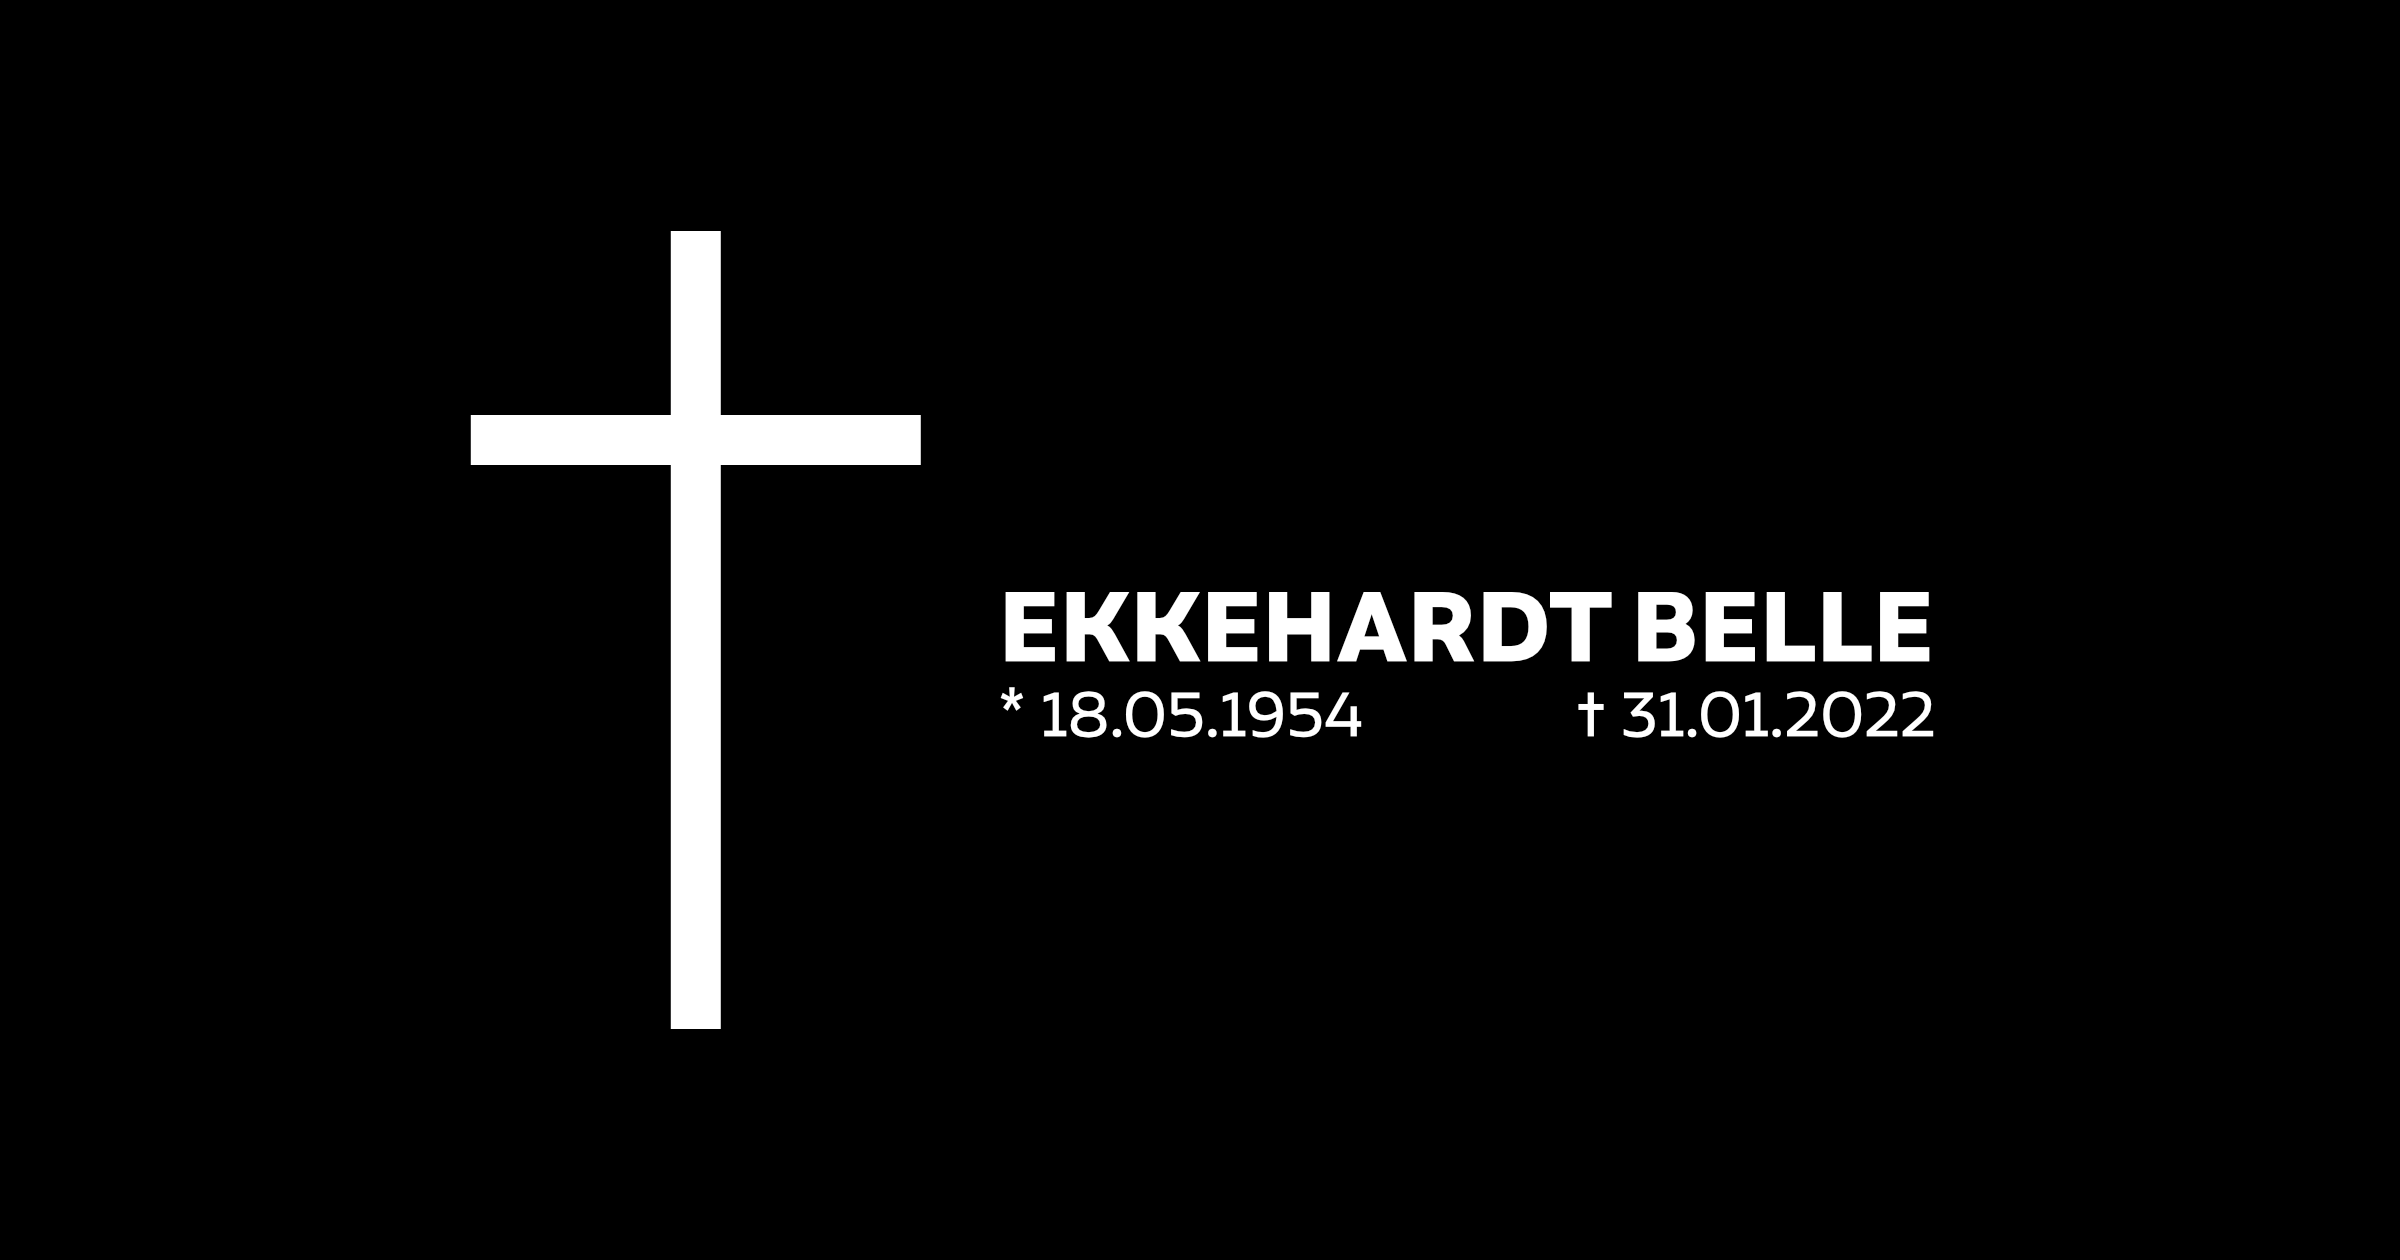 Ekkehardt Belle am 31.01.2022 verstorben